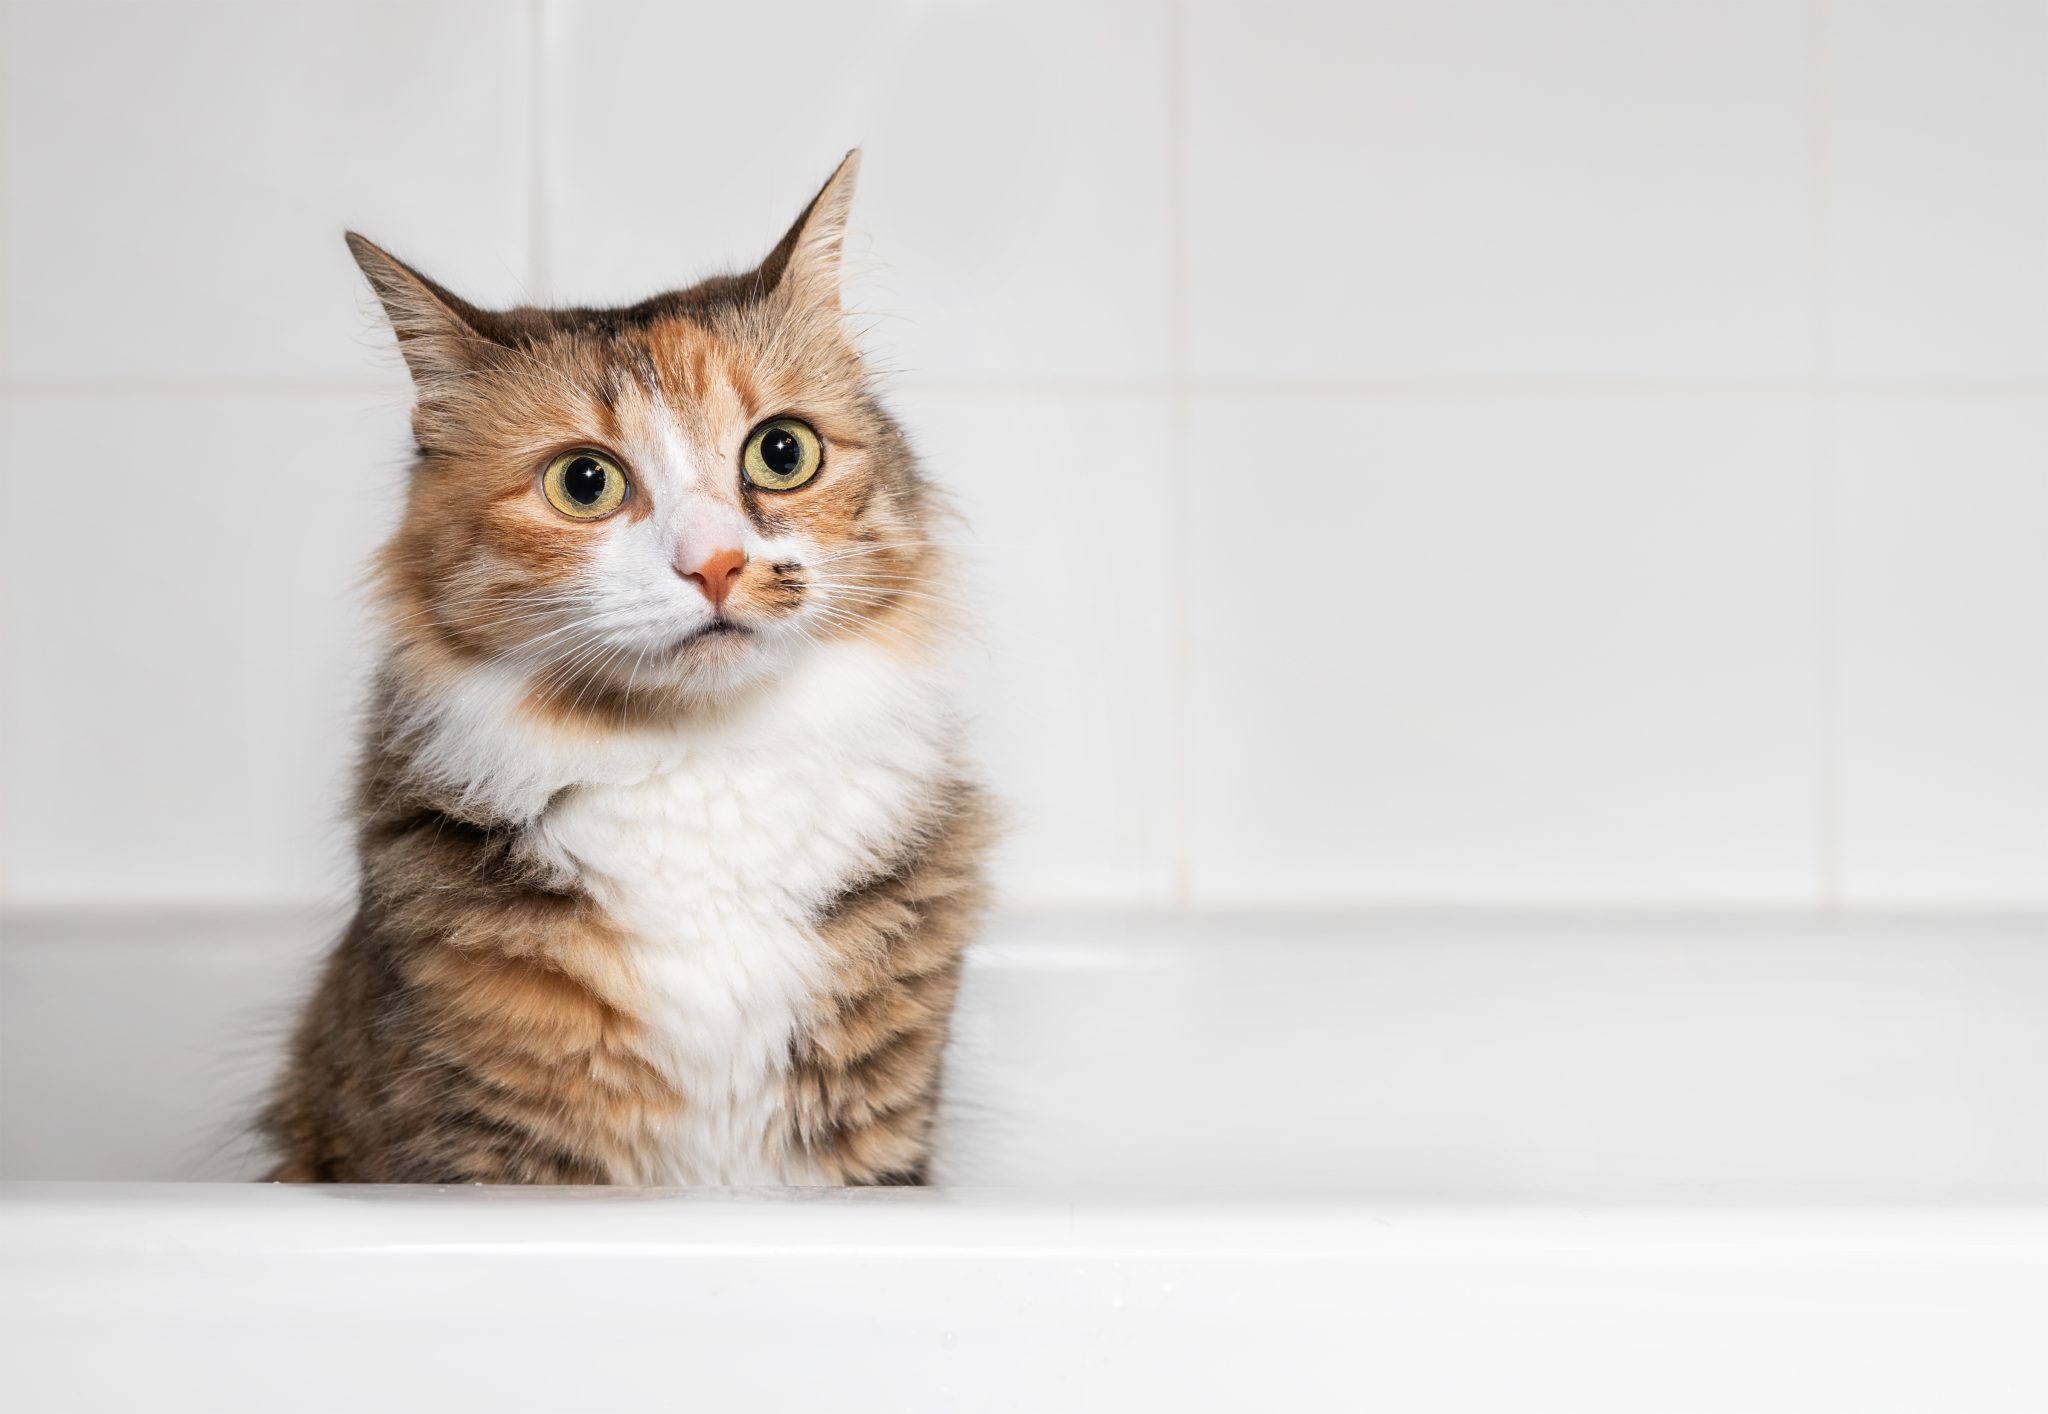 Gato sentado en la bañera después de jugar con agua, vista frontal